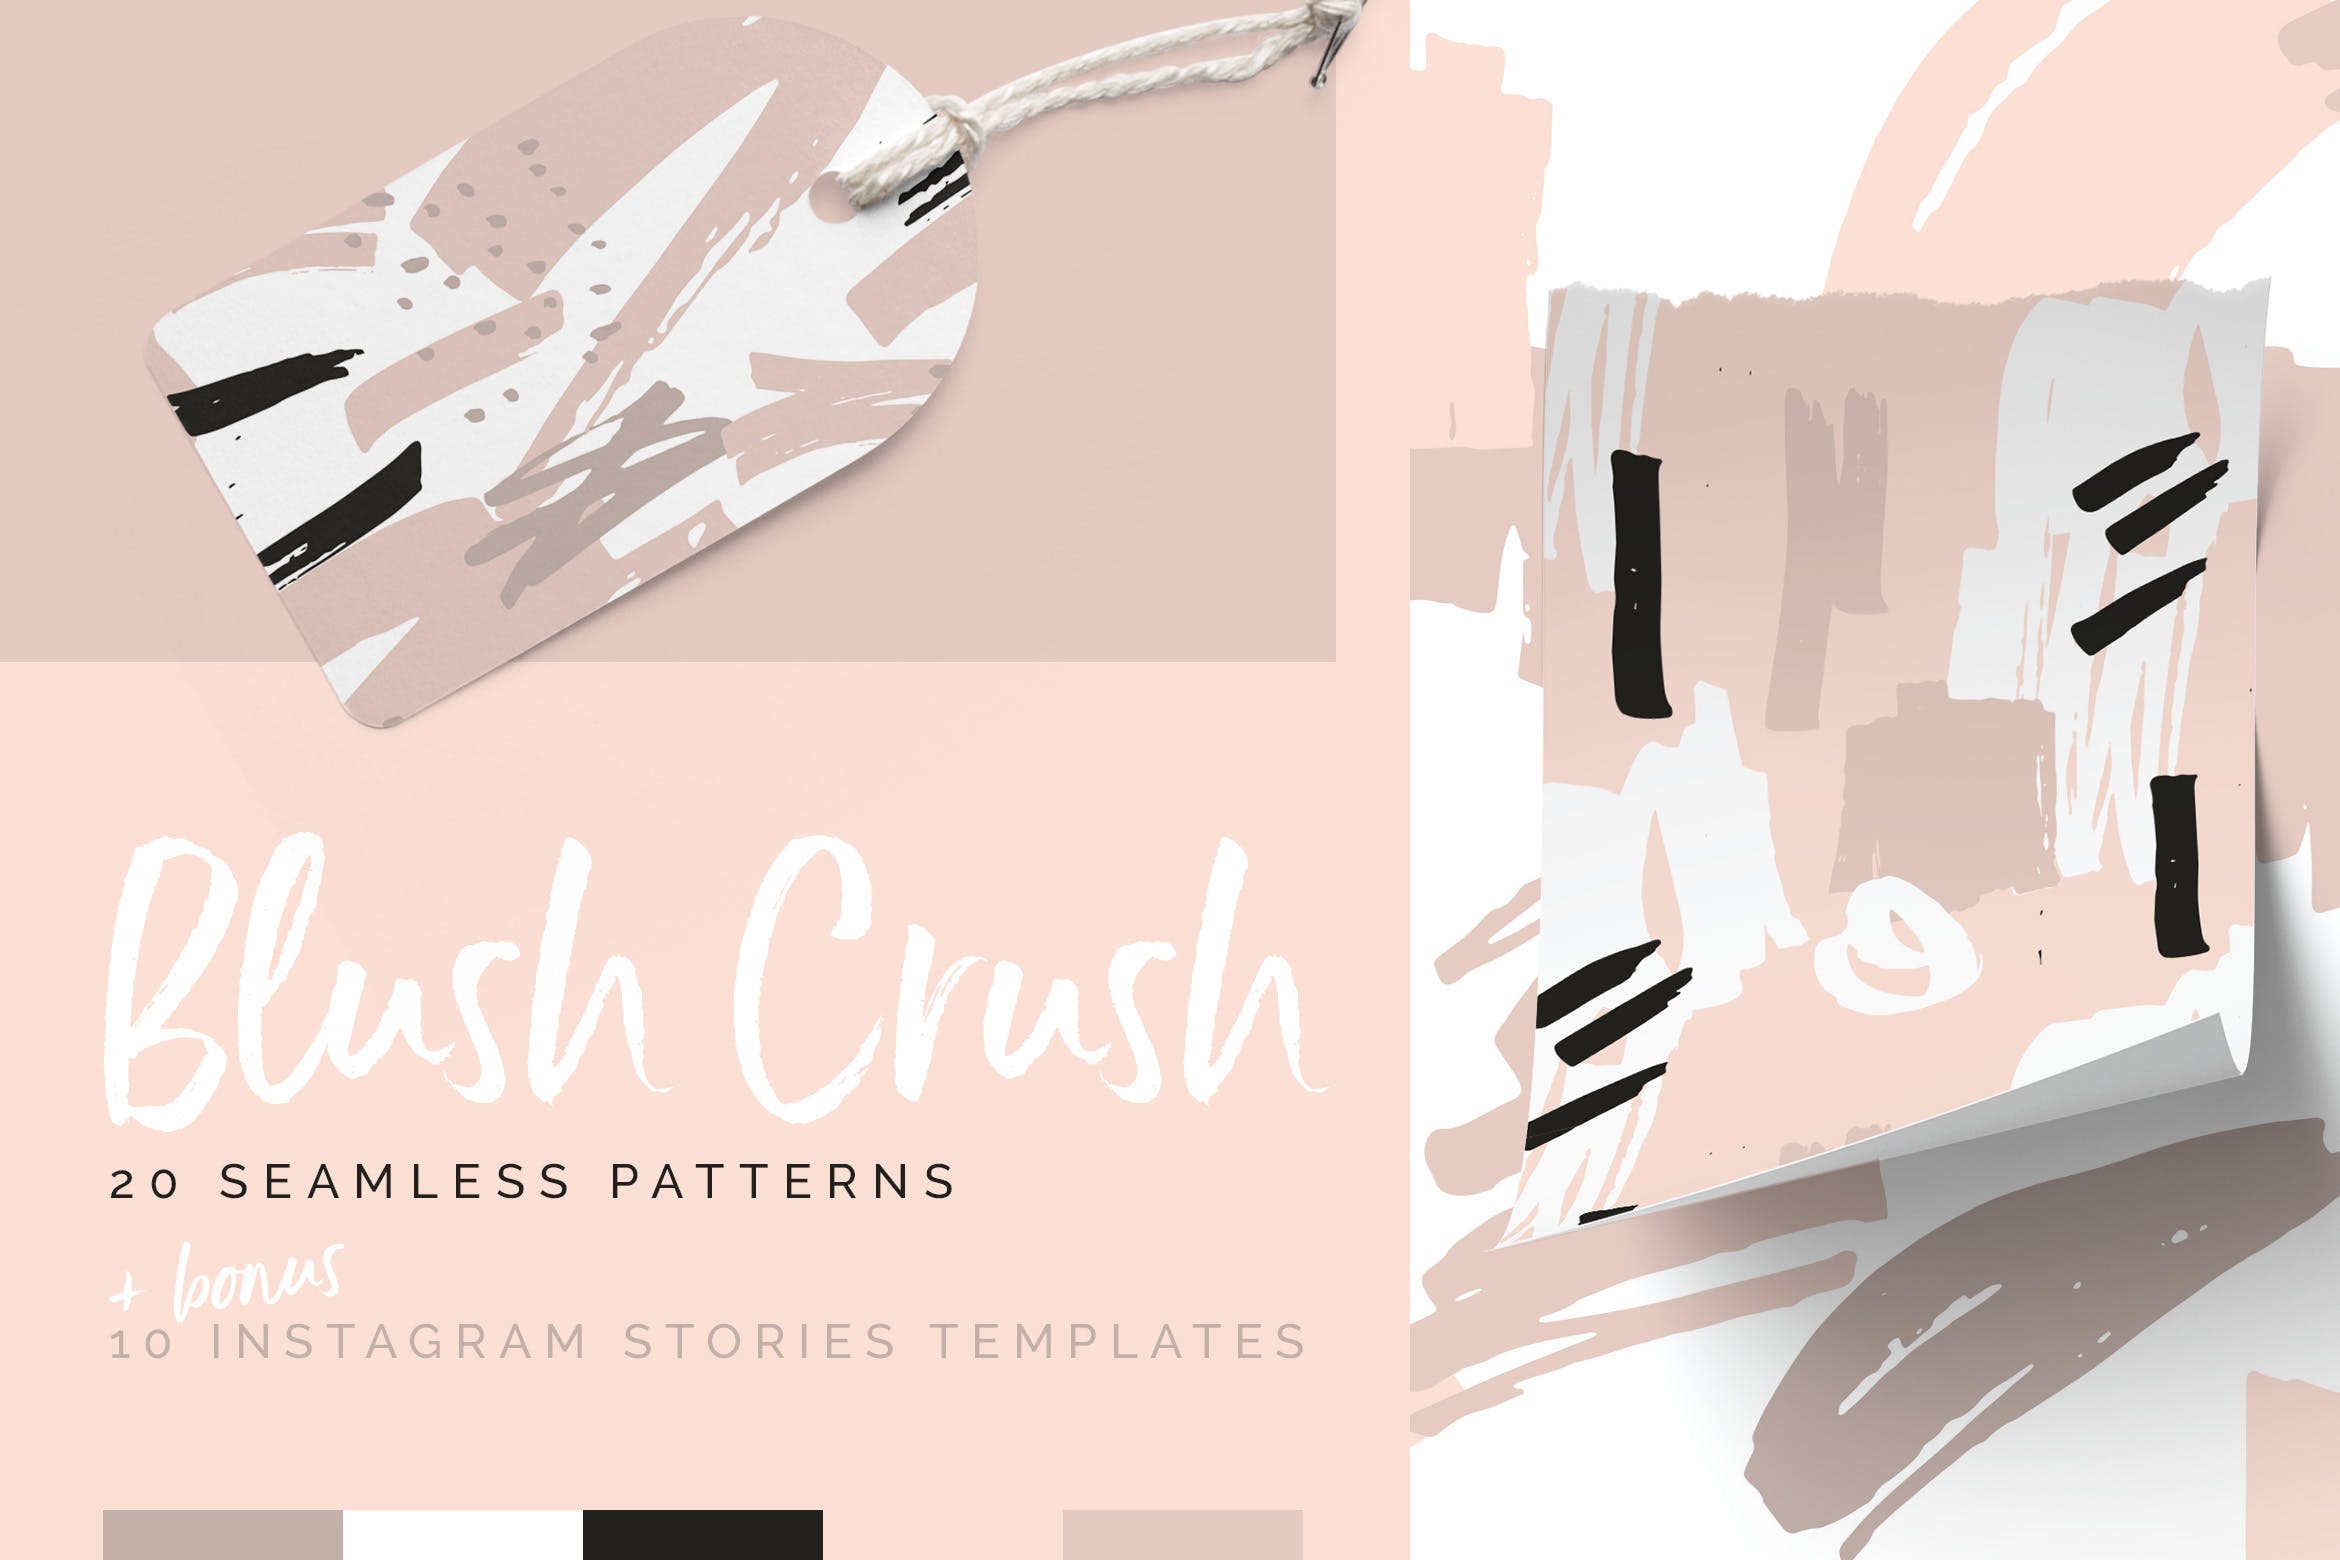 腮红粉红色系列装饰图案花纹素材Blush Crush Patterns Instagram Templates插图